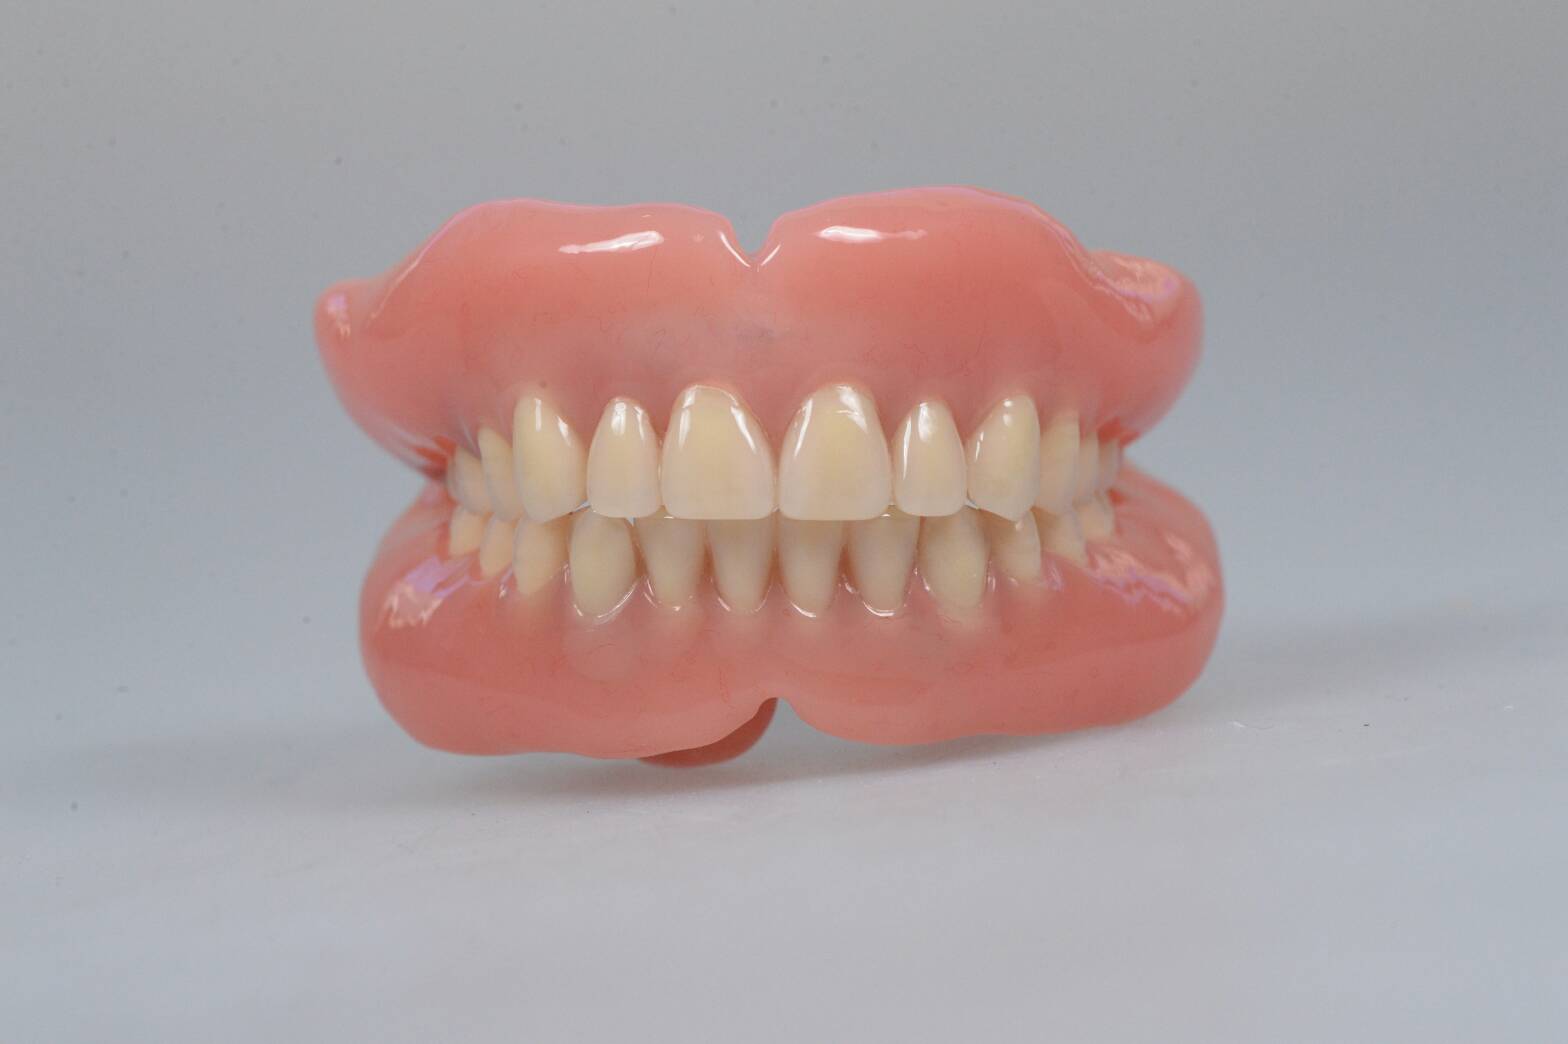 総入れ歯にするタイミングについて 残せる歯があるかどうか不安です 50代女性 東京千代田区のドイツ式入れ歯専門 稲葉歯科医院